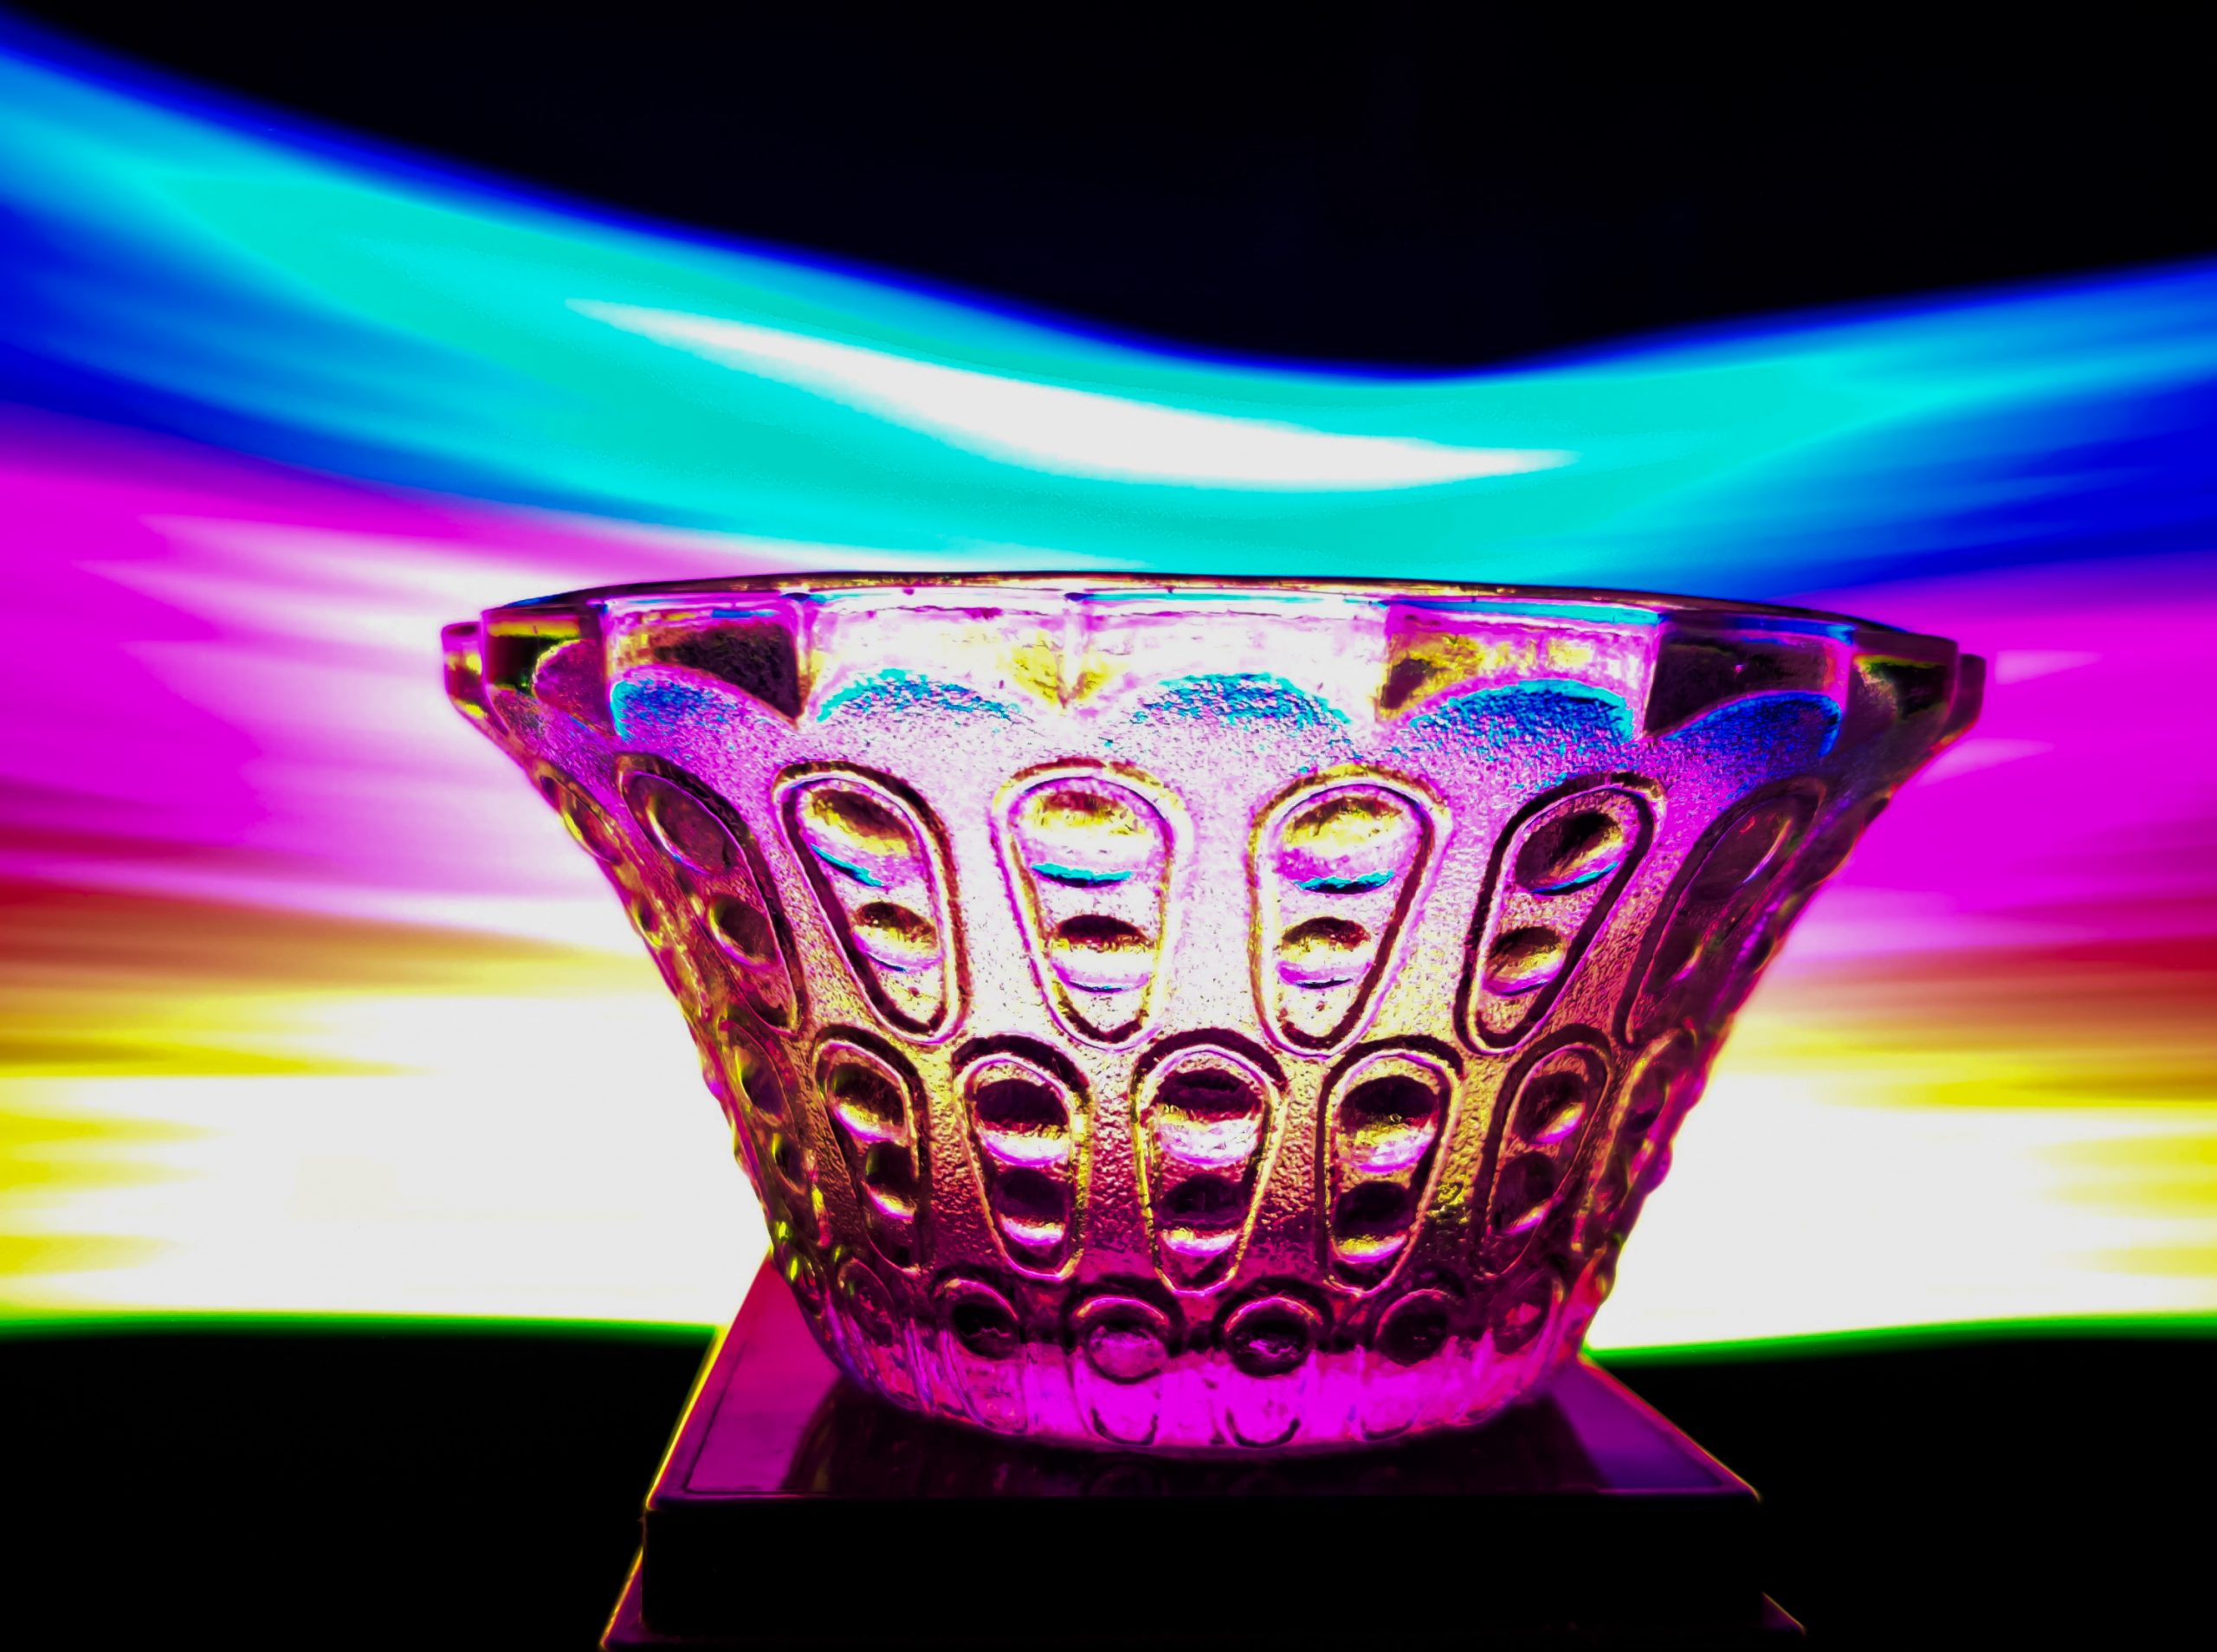 A glass bowl